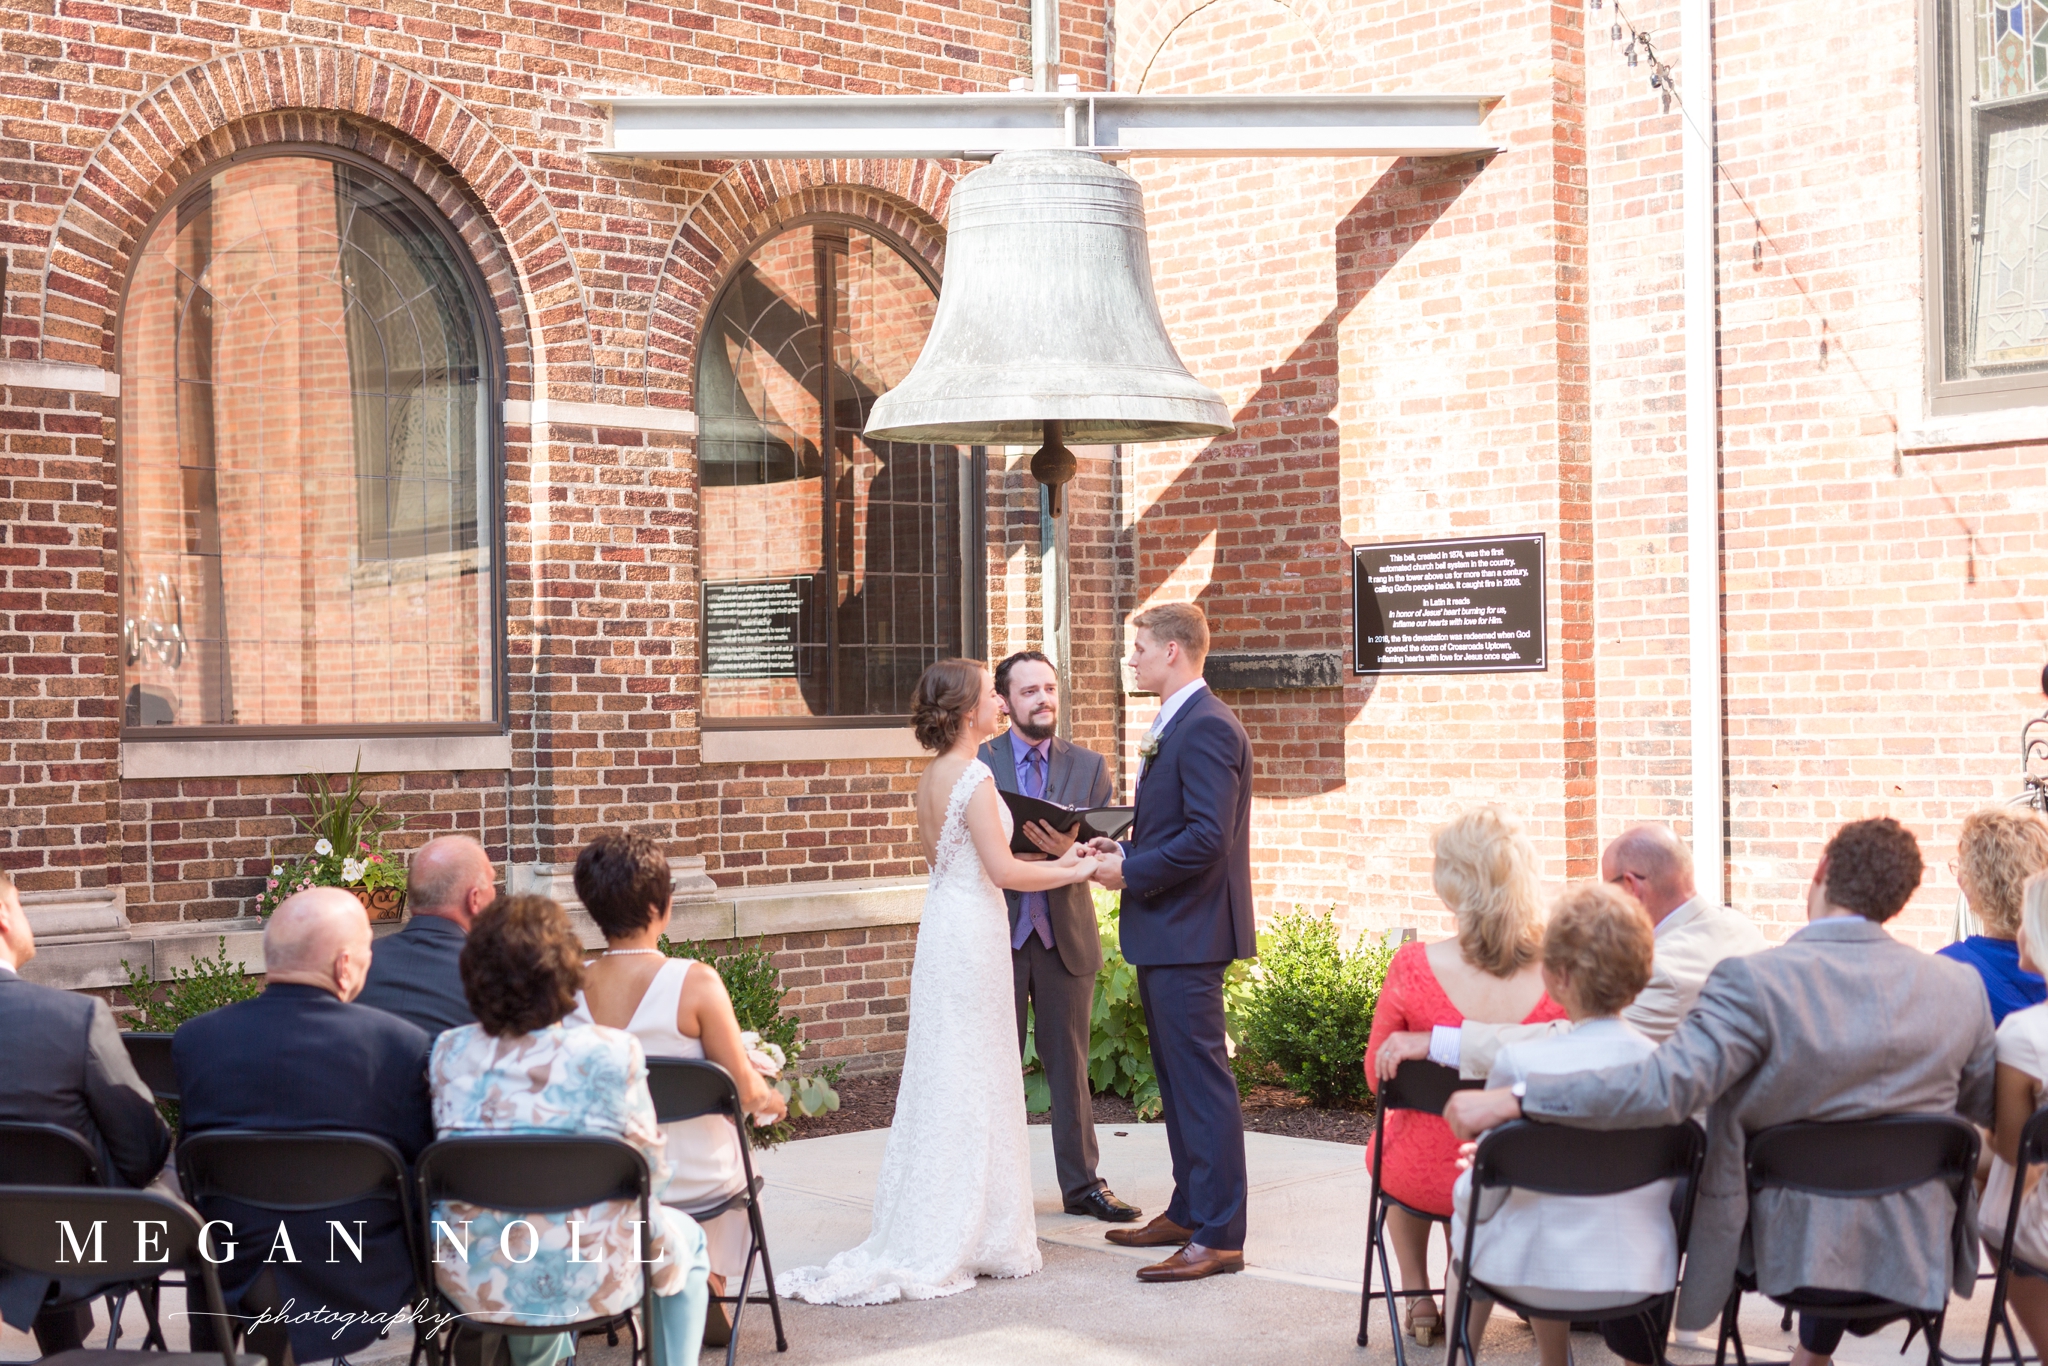 Wedding Ceremony in Courtyard, Outdoor Ceremony Locations in Cincinnati, Crossroads Uptown